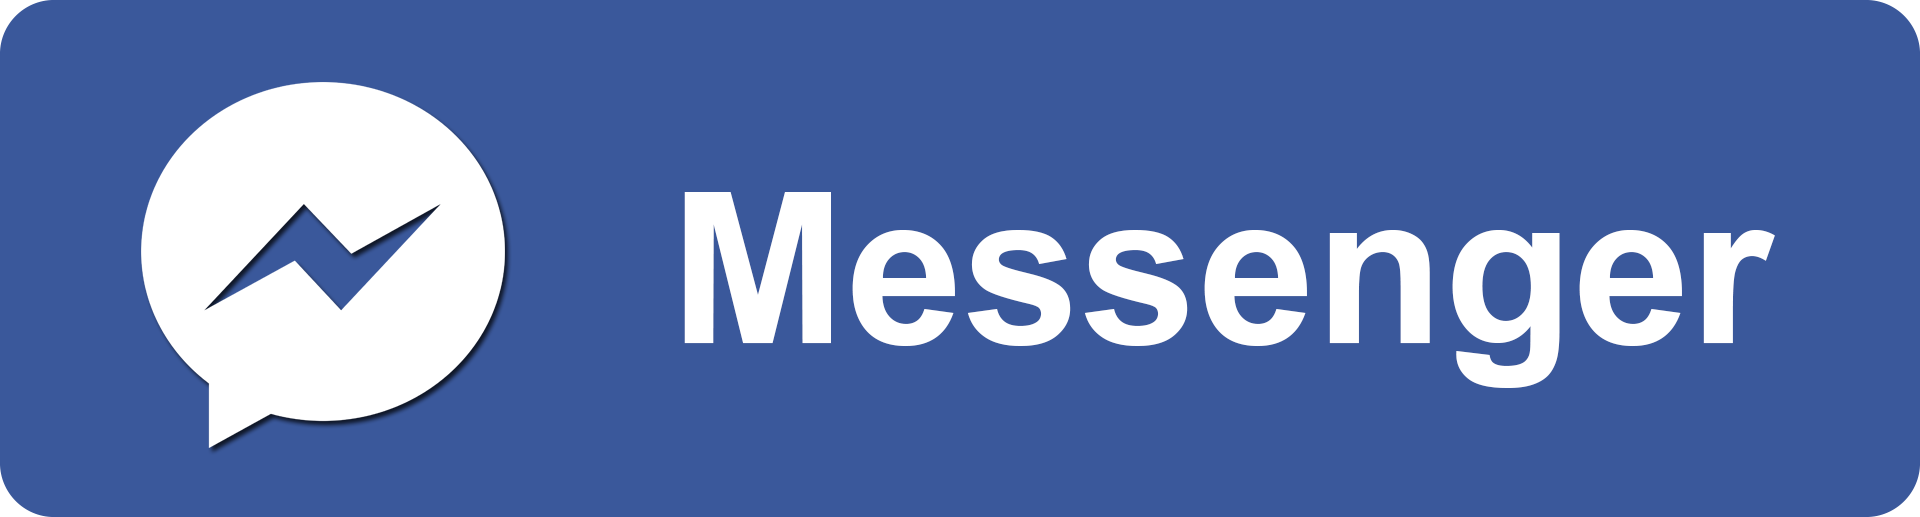 ติดต่อ/สั่งซื้อผ่าน Facebook messenger